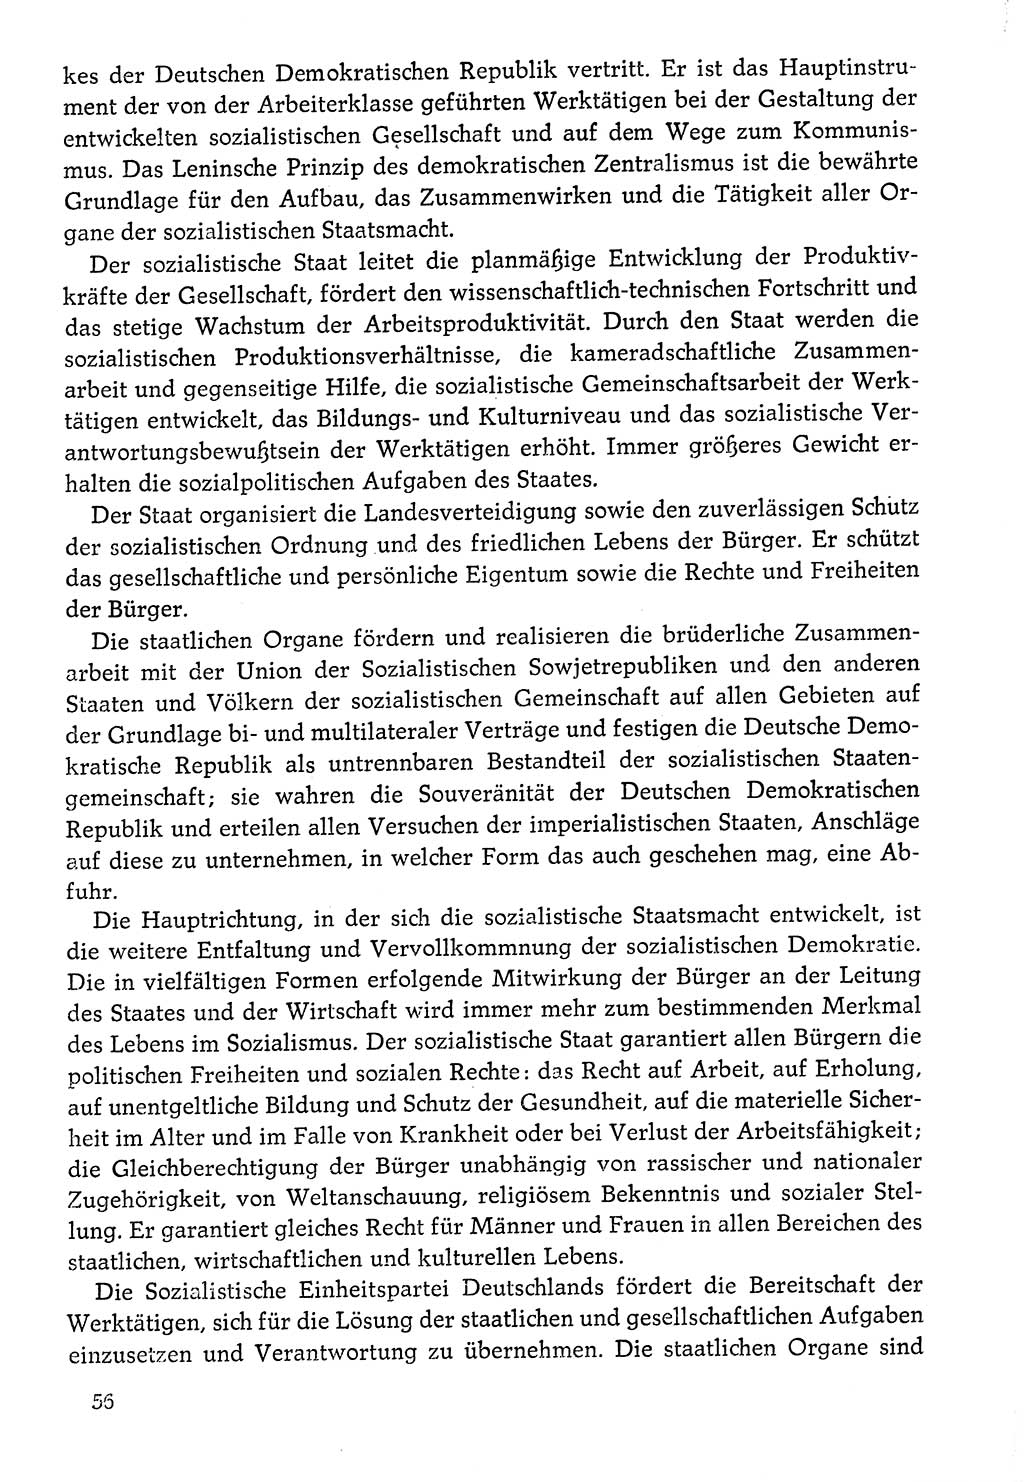 Dokumente der Sozialistischen Einheitspartei Deutschlands (SED) [Deutsche Demokratische Republik (DDR)] 1976-1977, Seite 56 (Dok. SED DDR 1976-1977, S. 56)